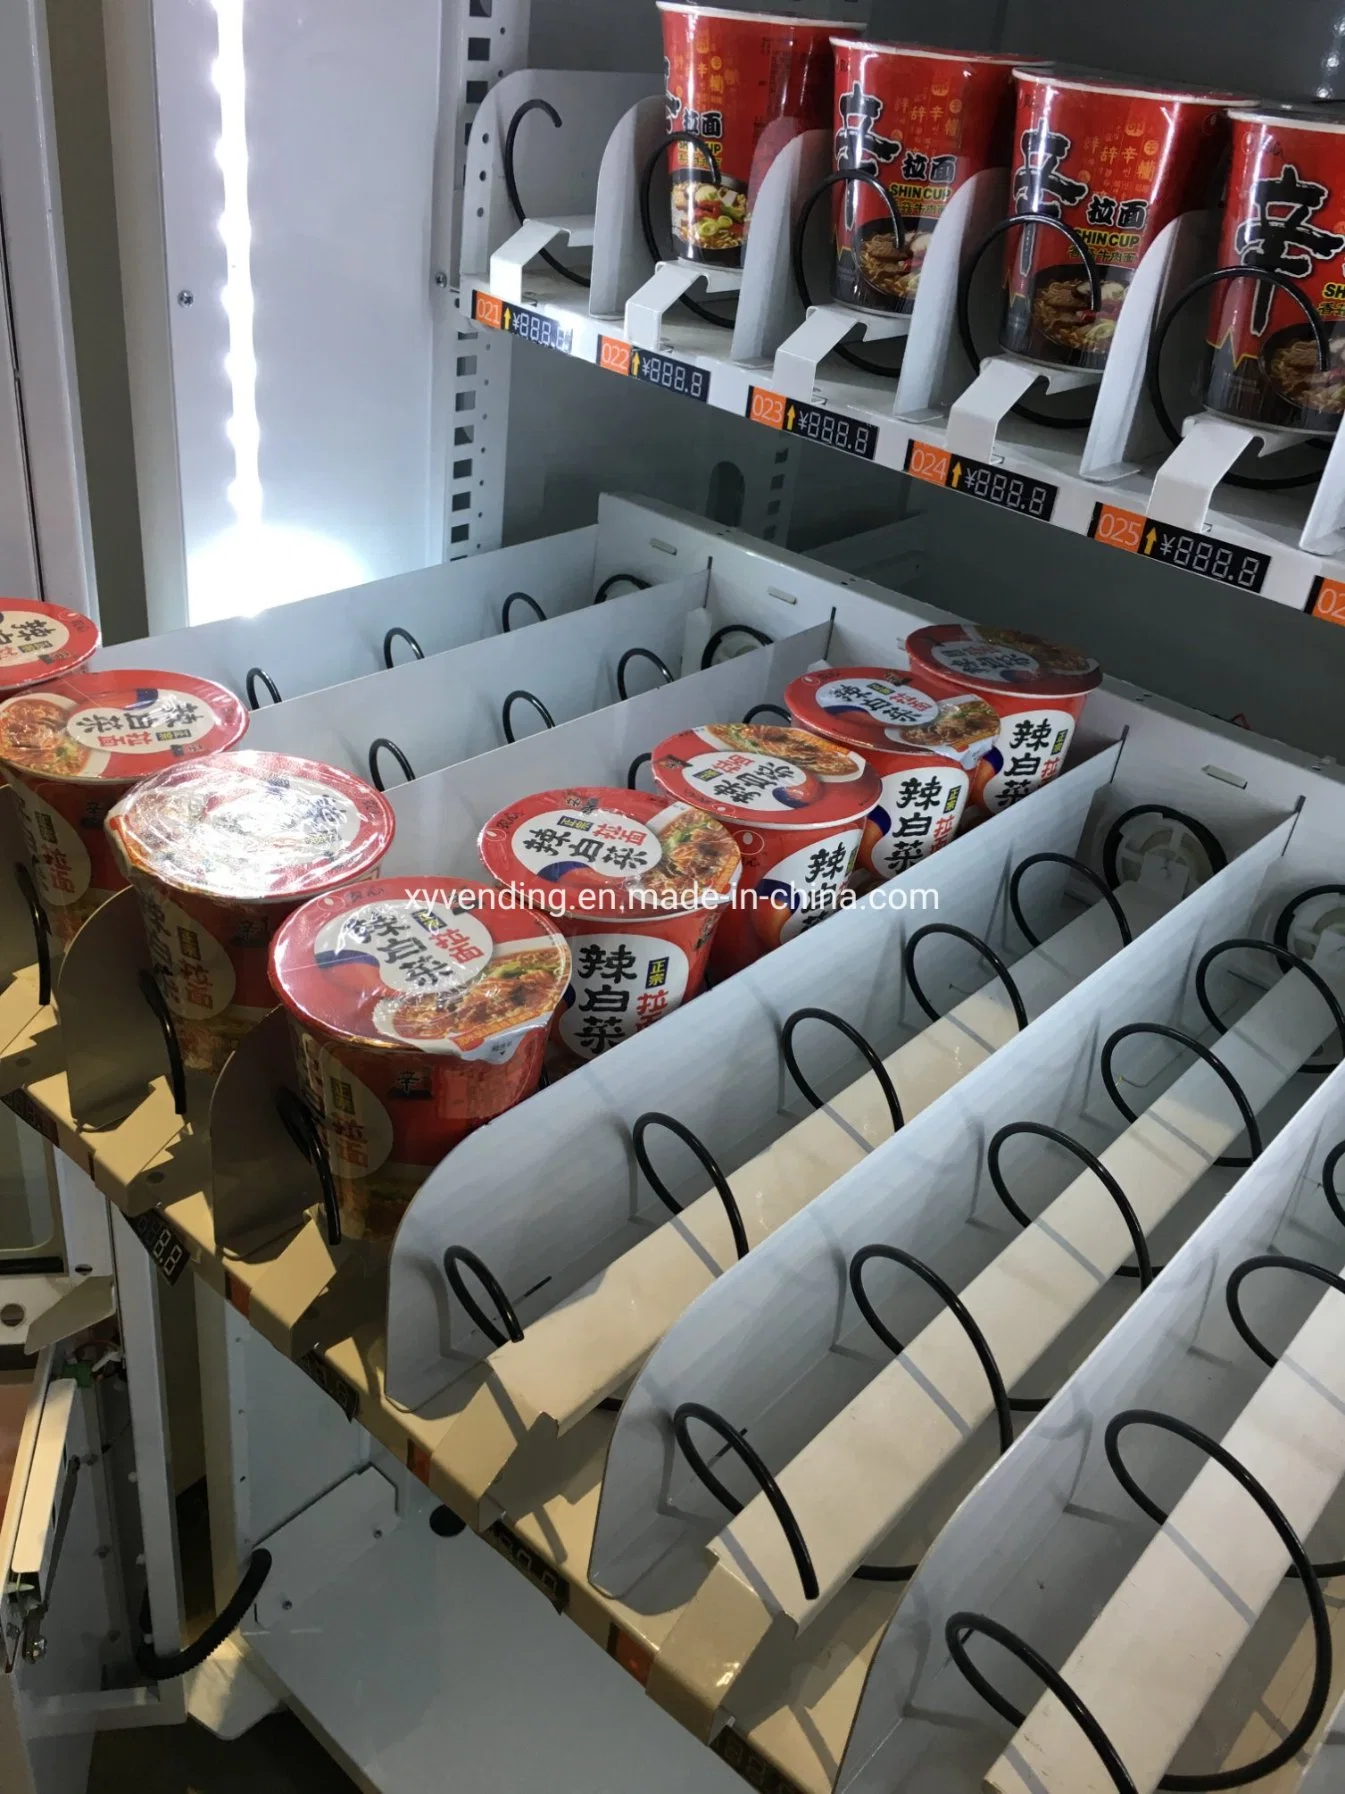 Benutzerdefinierte Cup Noodle Vending Maschine mit Heißwasser-Spender für Malaysia